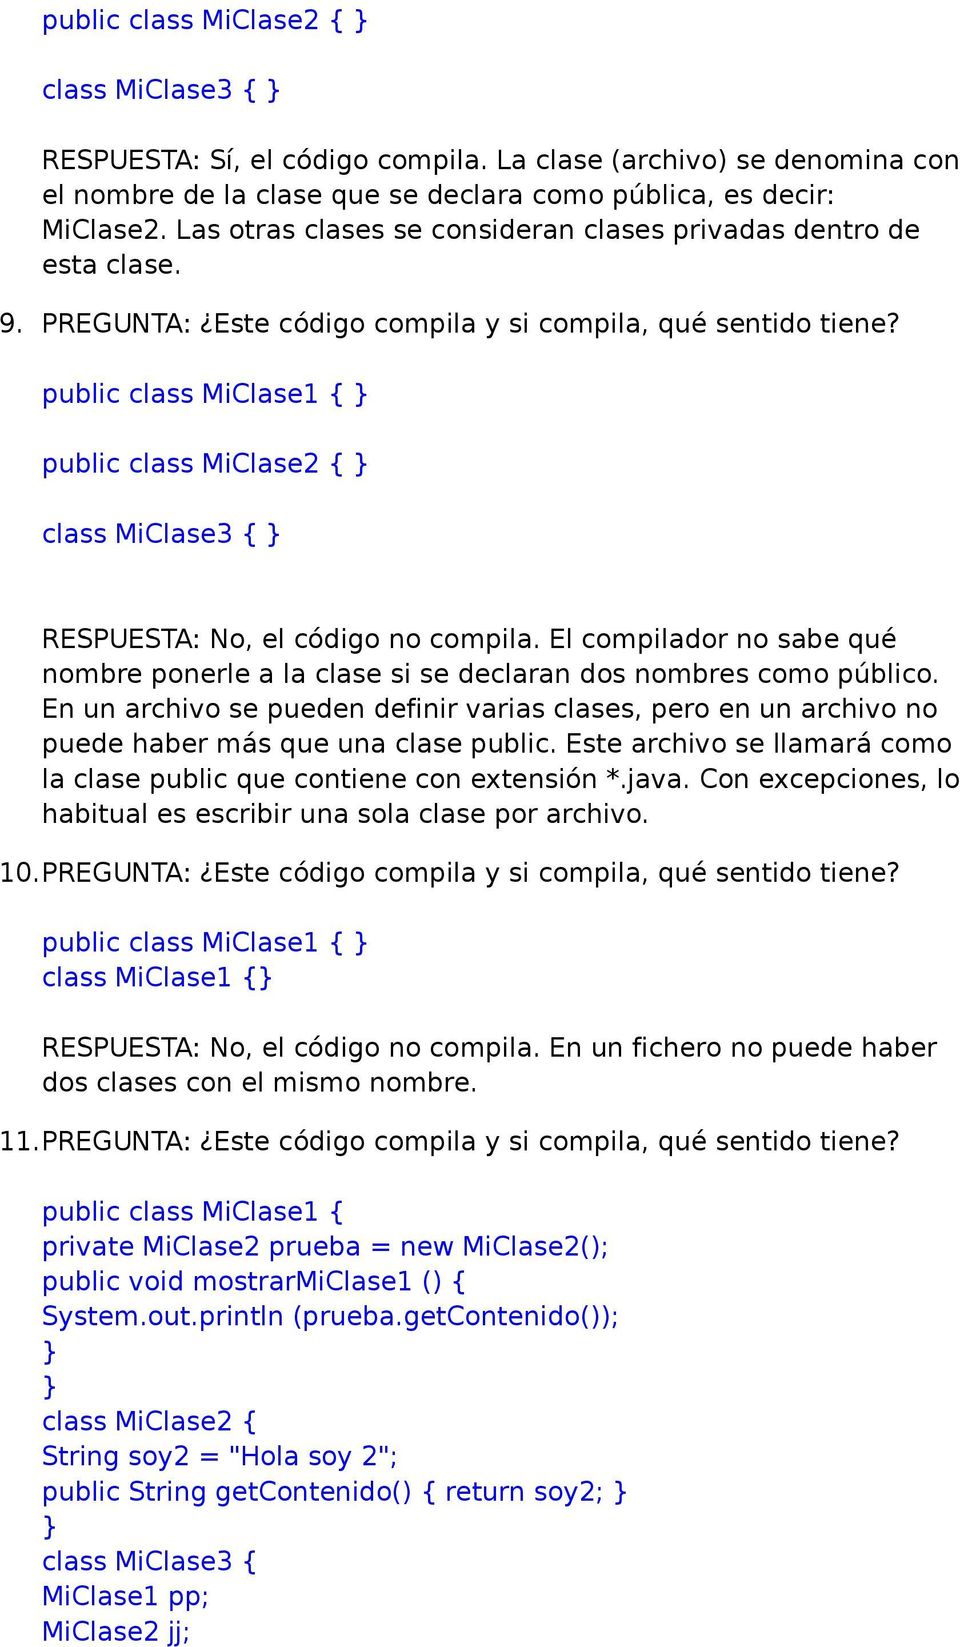 public class MiClase1 { public class MiClase2 { class MiClase3 { RESPUESTA: No, el código no compila. El compilador no sabe qué nombre ponerle a la clase si se declaran dos nombres como público.